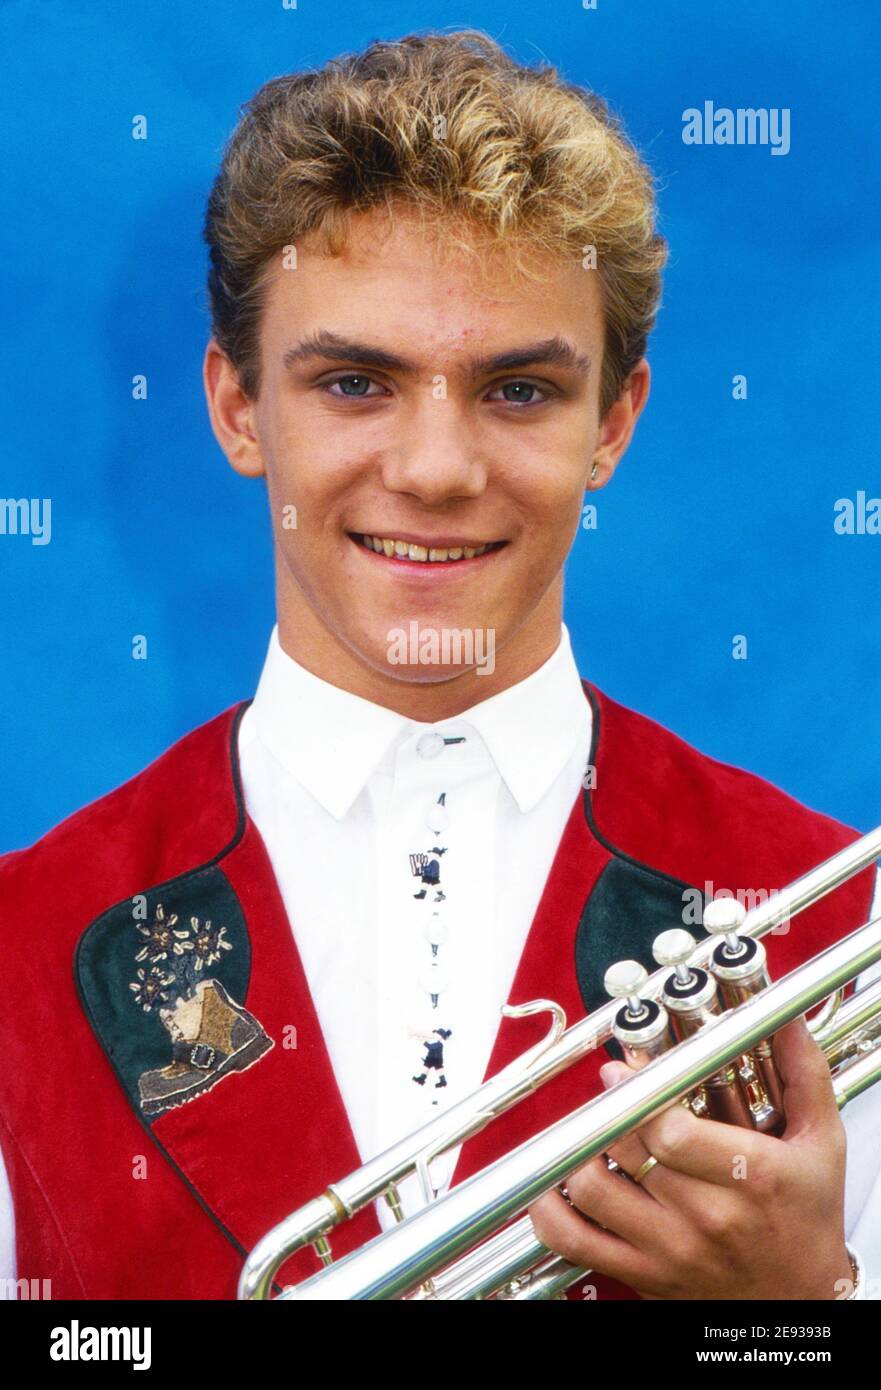 Stefan Mross, deutscher Trompeter und Sänger, Deutschland um 1991. Stock Photo